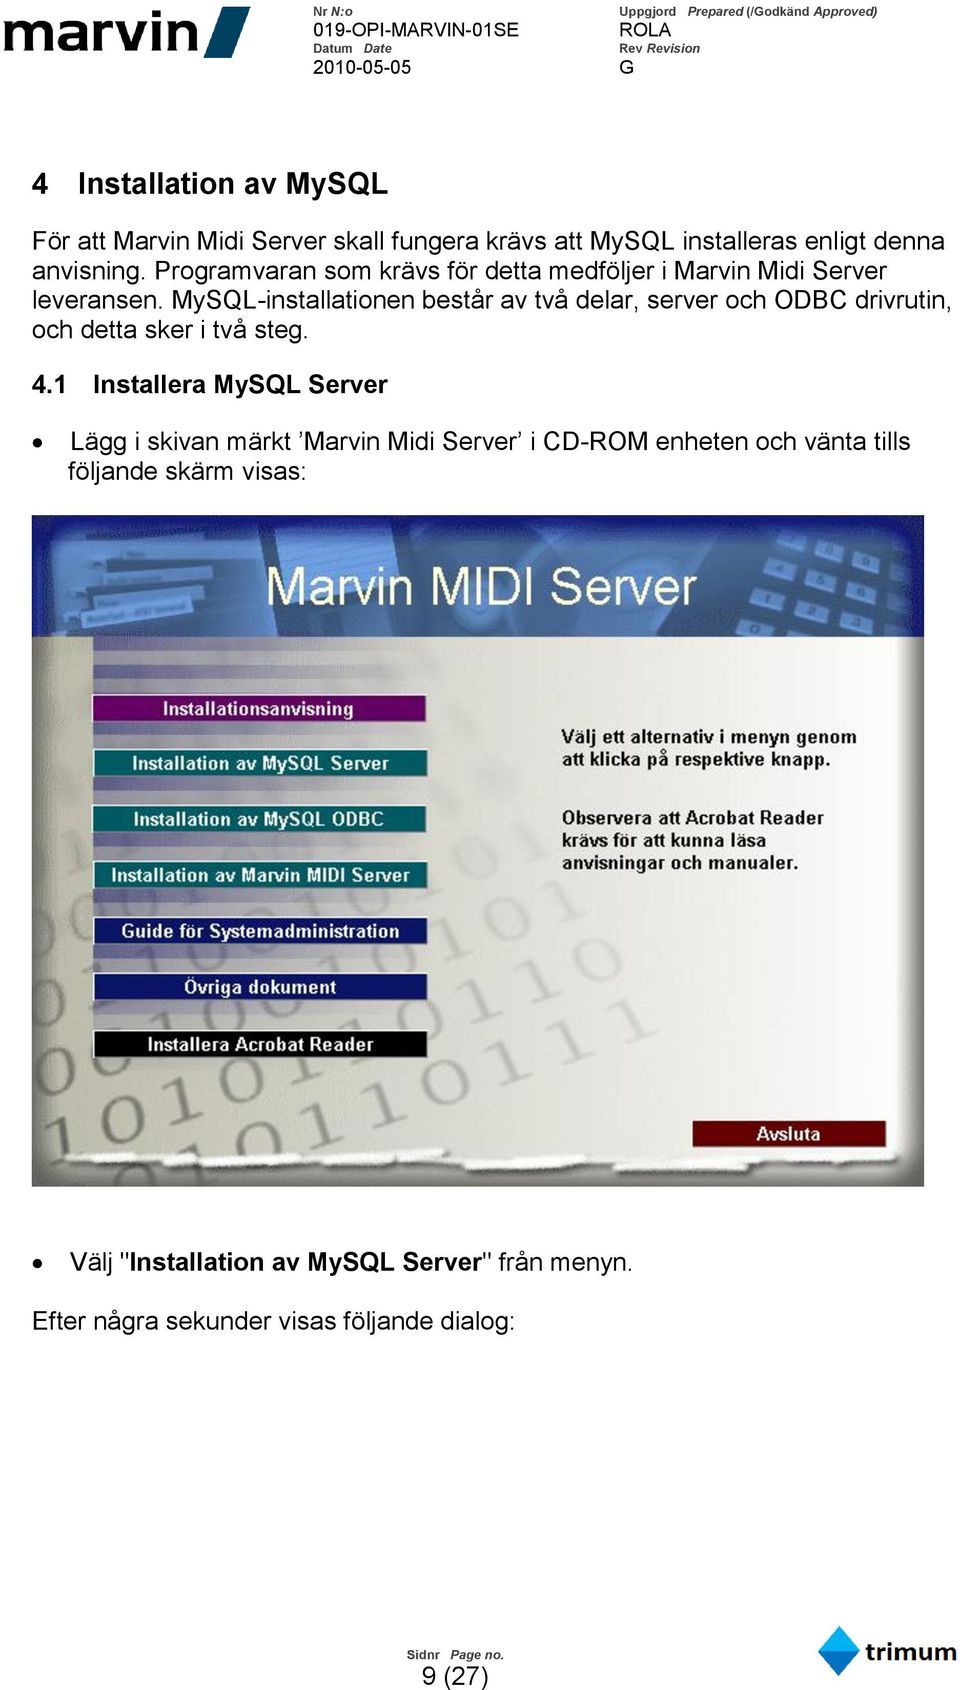 MySQL-installationen består av två delar, server och ODBC drivrutin, och detta sker i två steg. 4.